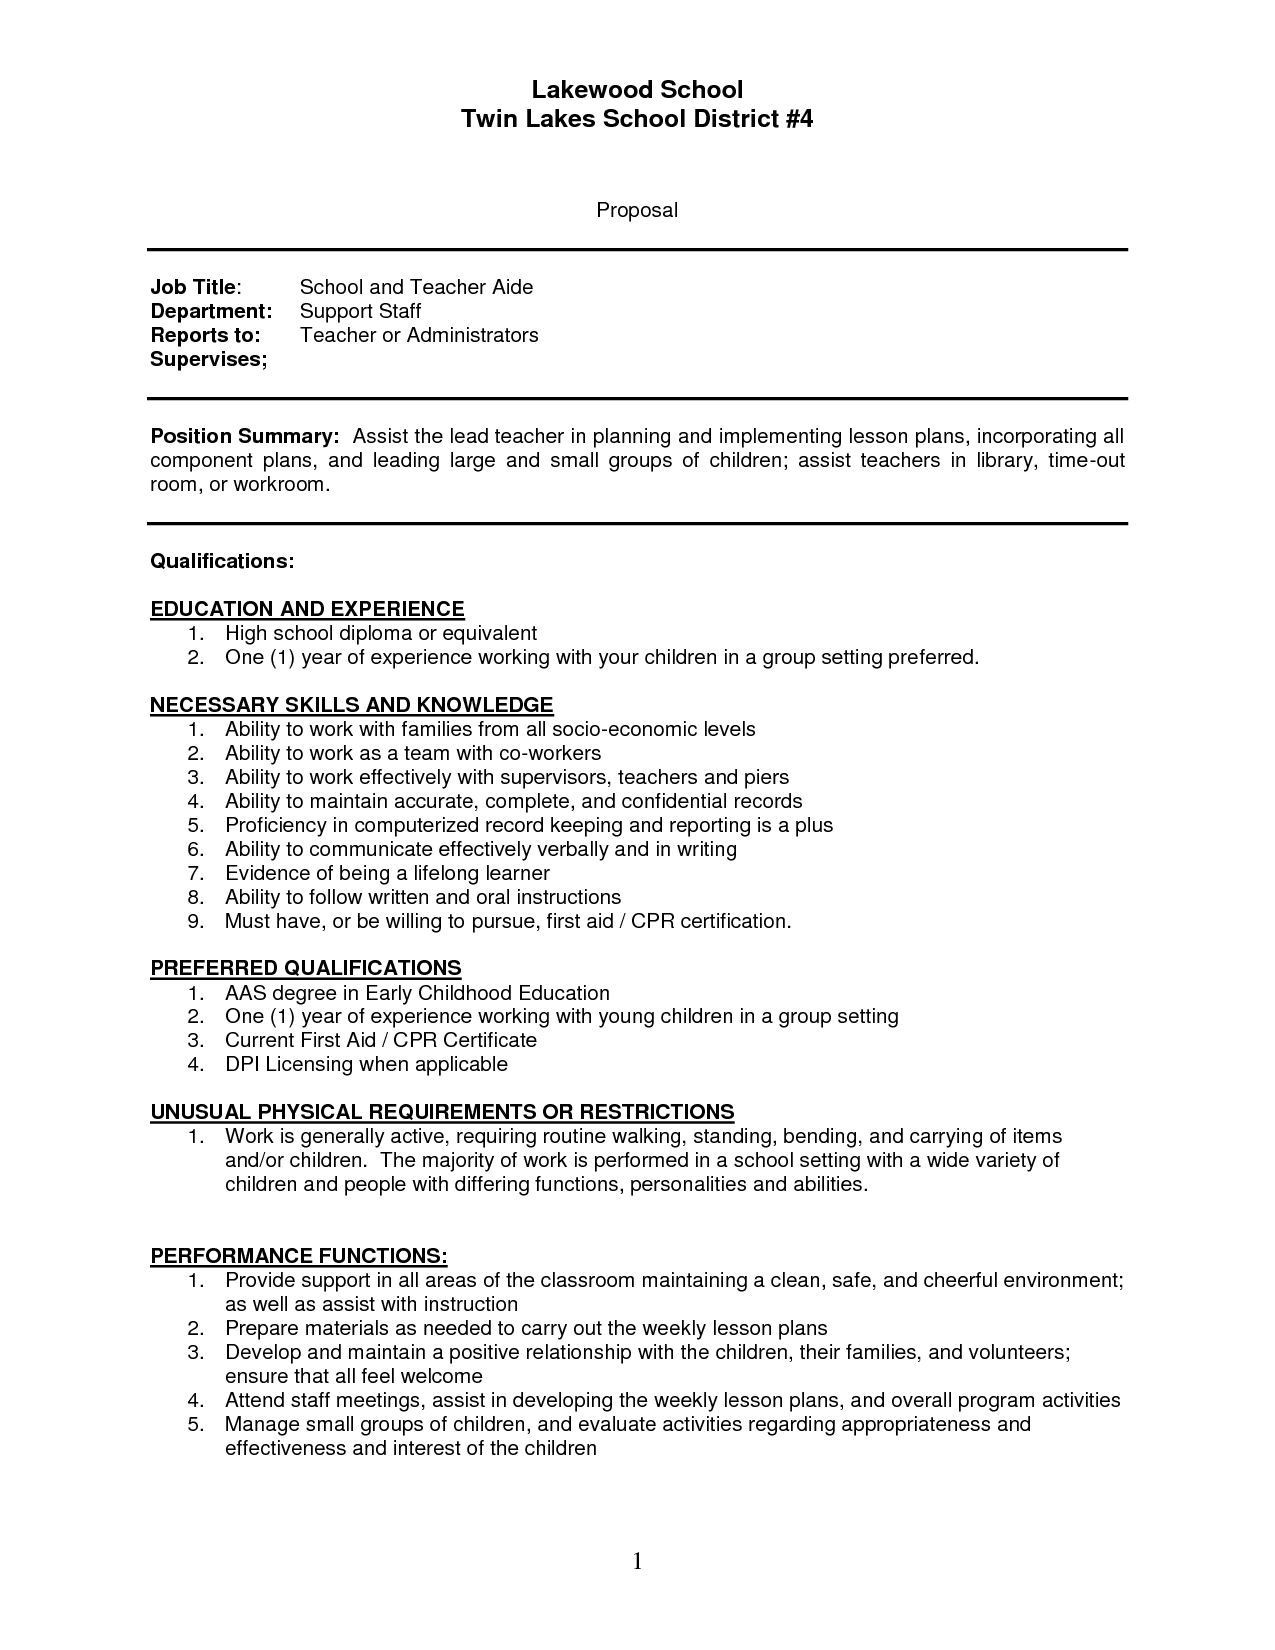 Sample Resume for Let Passer Teacher 23 Teaching assistant Cover Letter In 2020